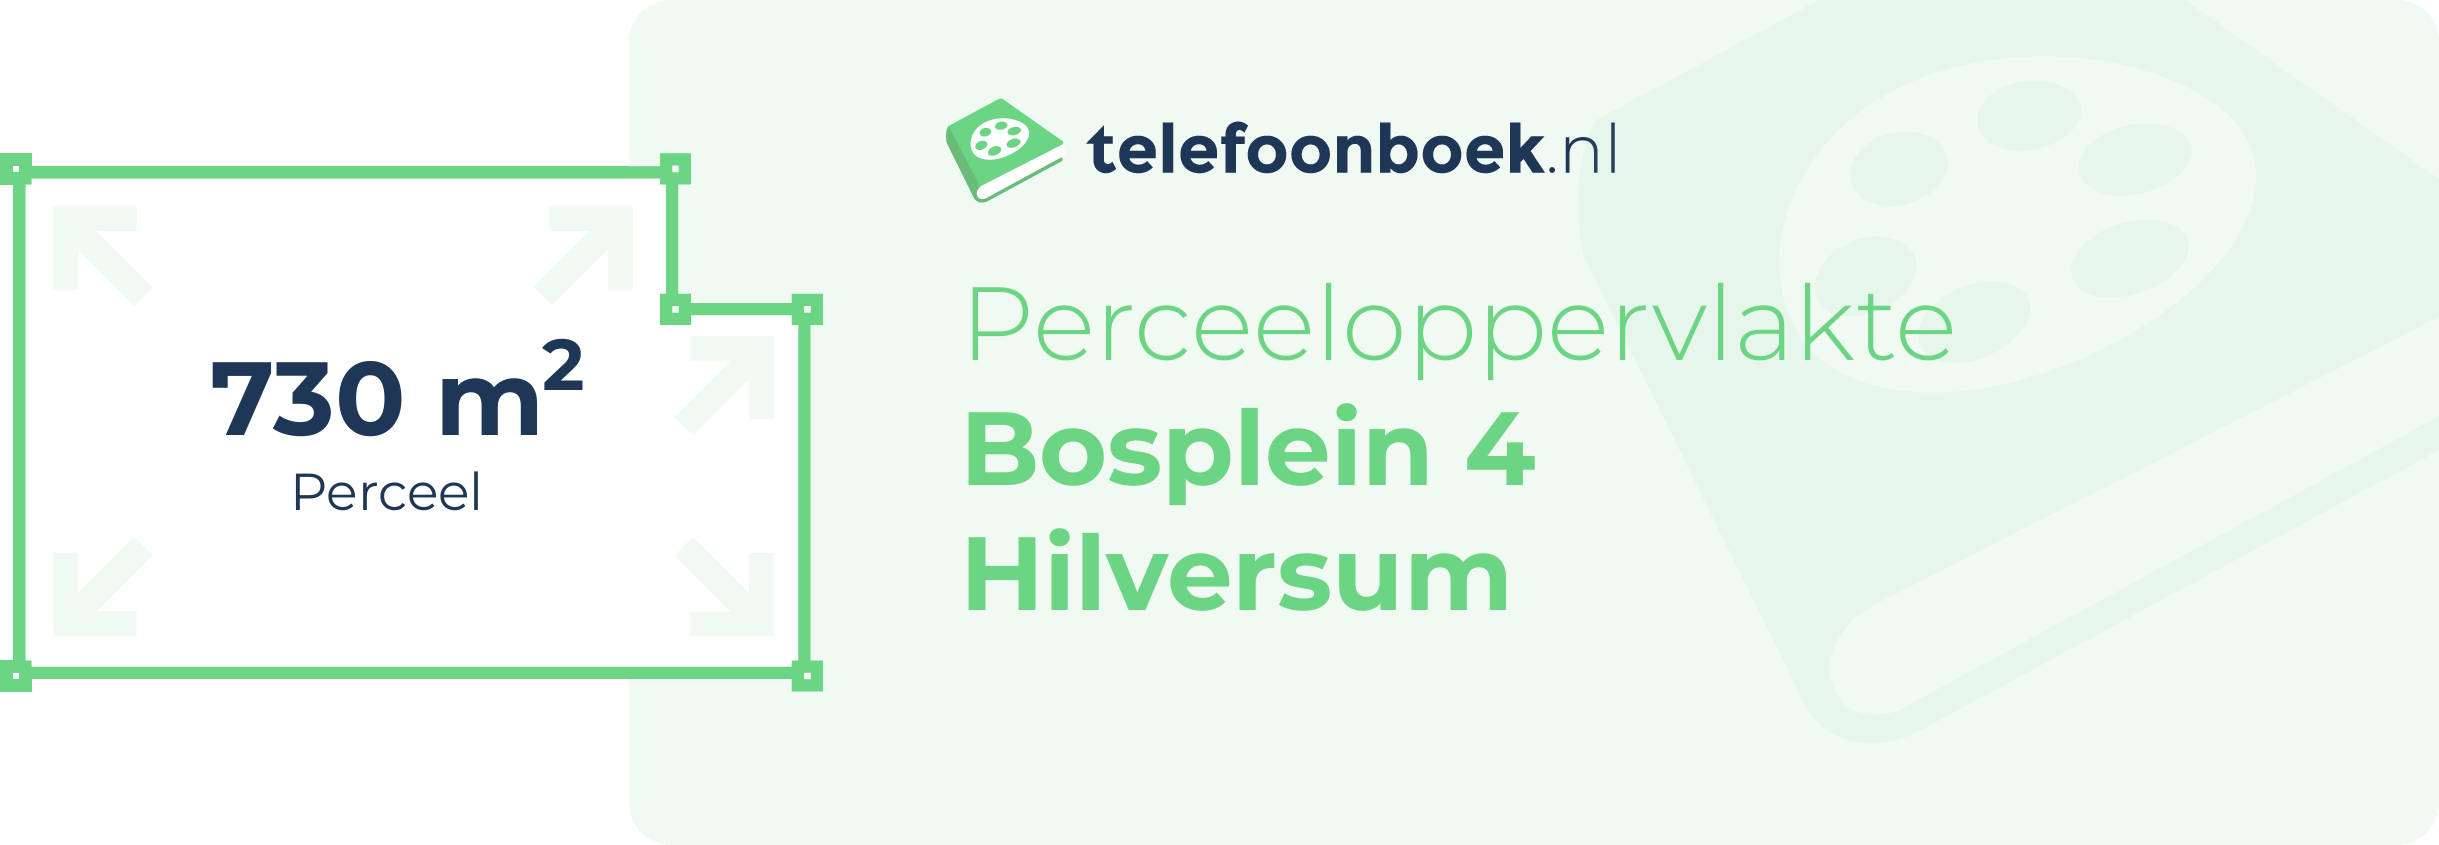 Perceeloppervlakte Bosplein 4 Hilversum